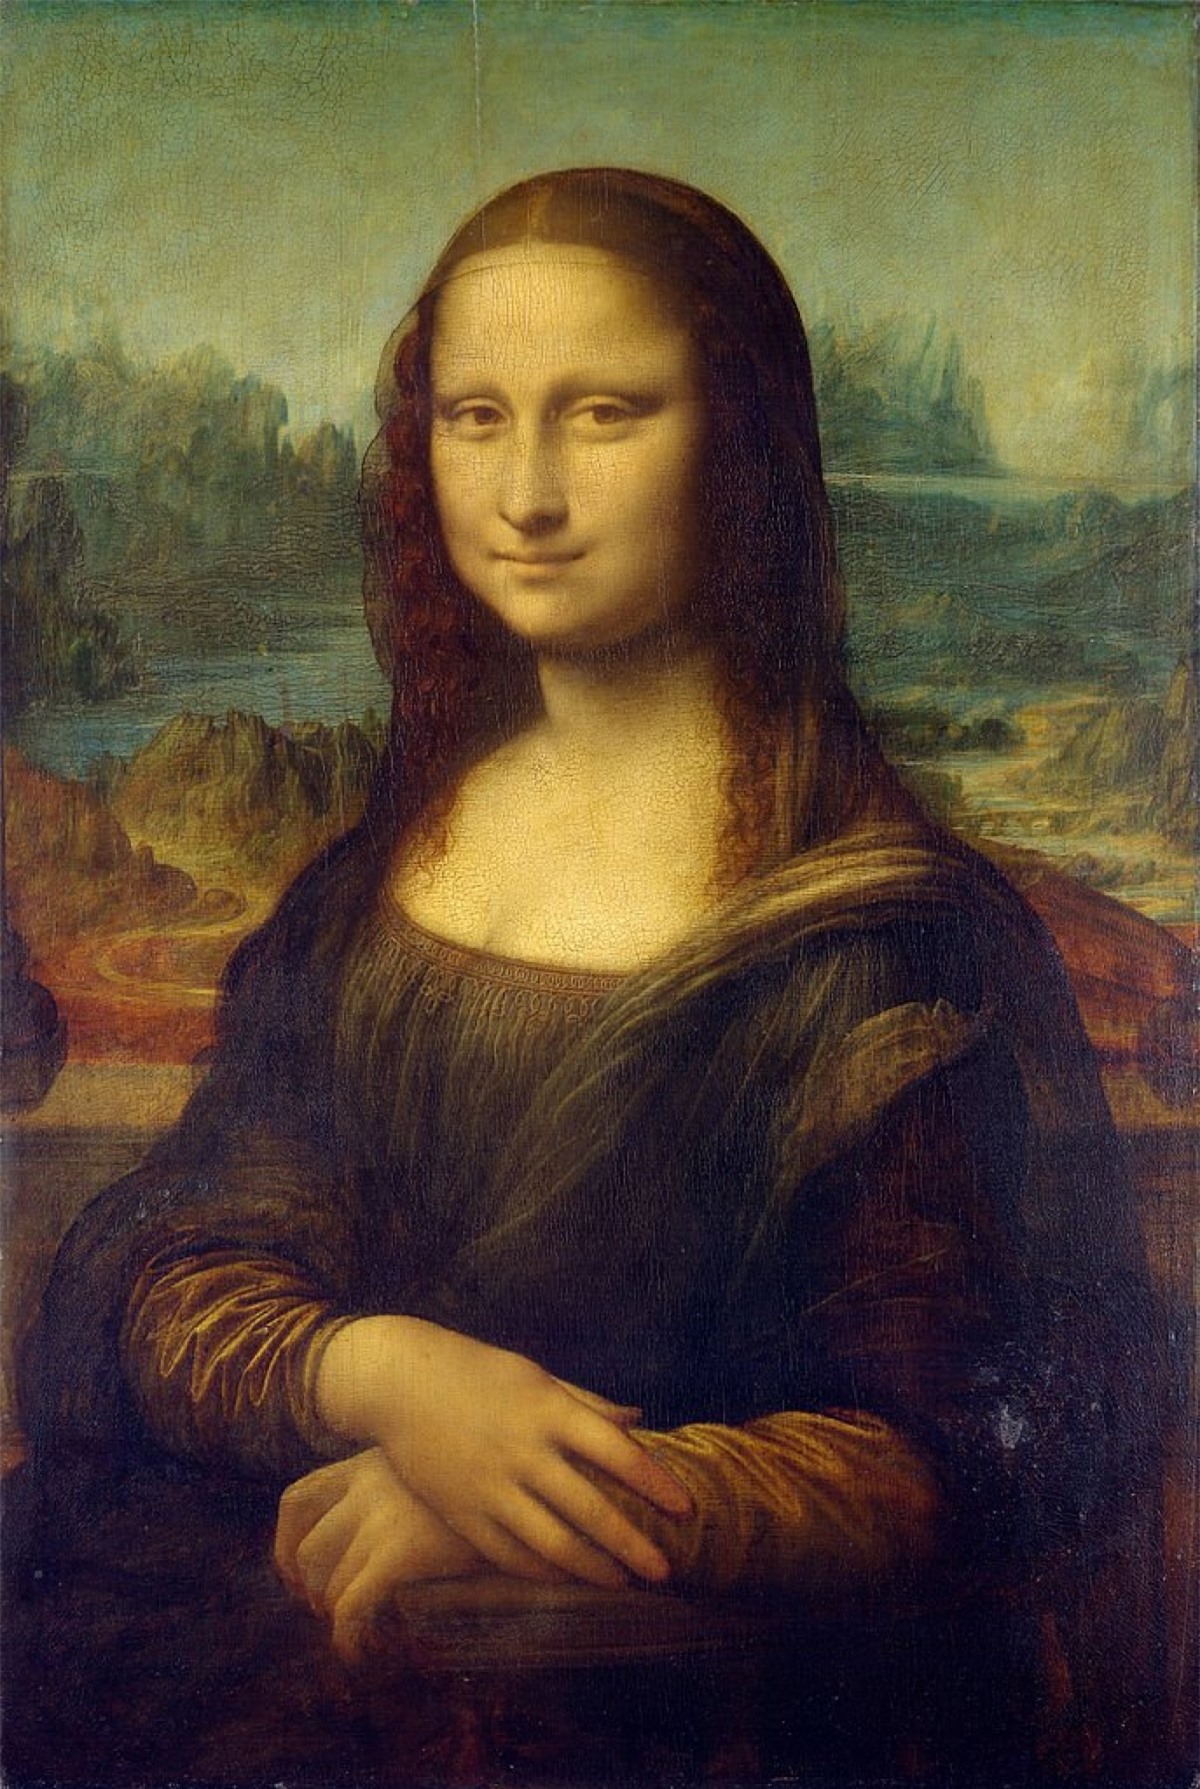 Mona Lisa - Leonardo da Vinci. Bức tranh nổi tiếng nhất trên thế giới là điểm thu hút chính của Bảo tàng Louvre ở Paris, nơi mỗi năm có 6 triệu người đến tham quan. Leonardo da Vinci đã vẽ bức tranh này từ năm 1503 hoặc 1504 trong khoảng thời gian ngắn trước khi ông qua đời năm 1519.